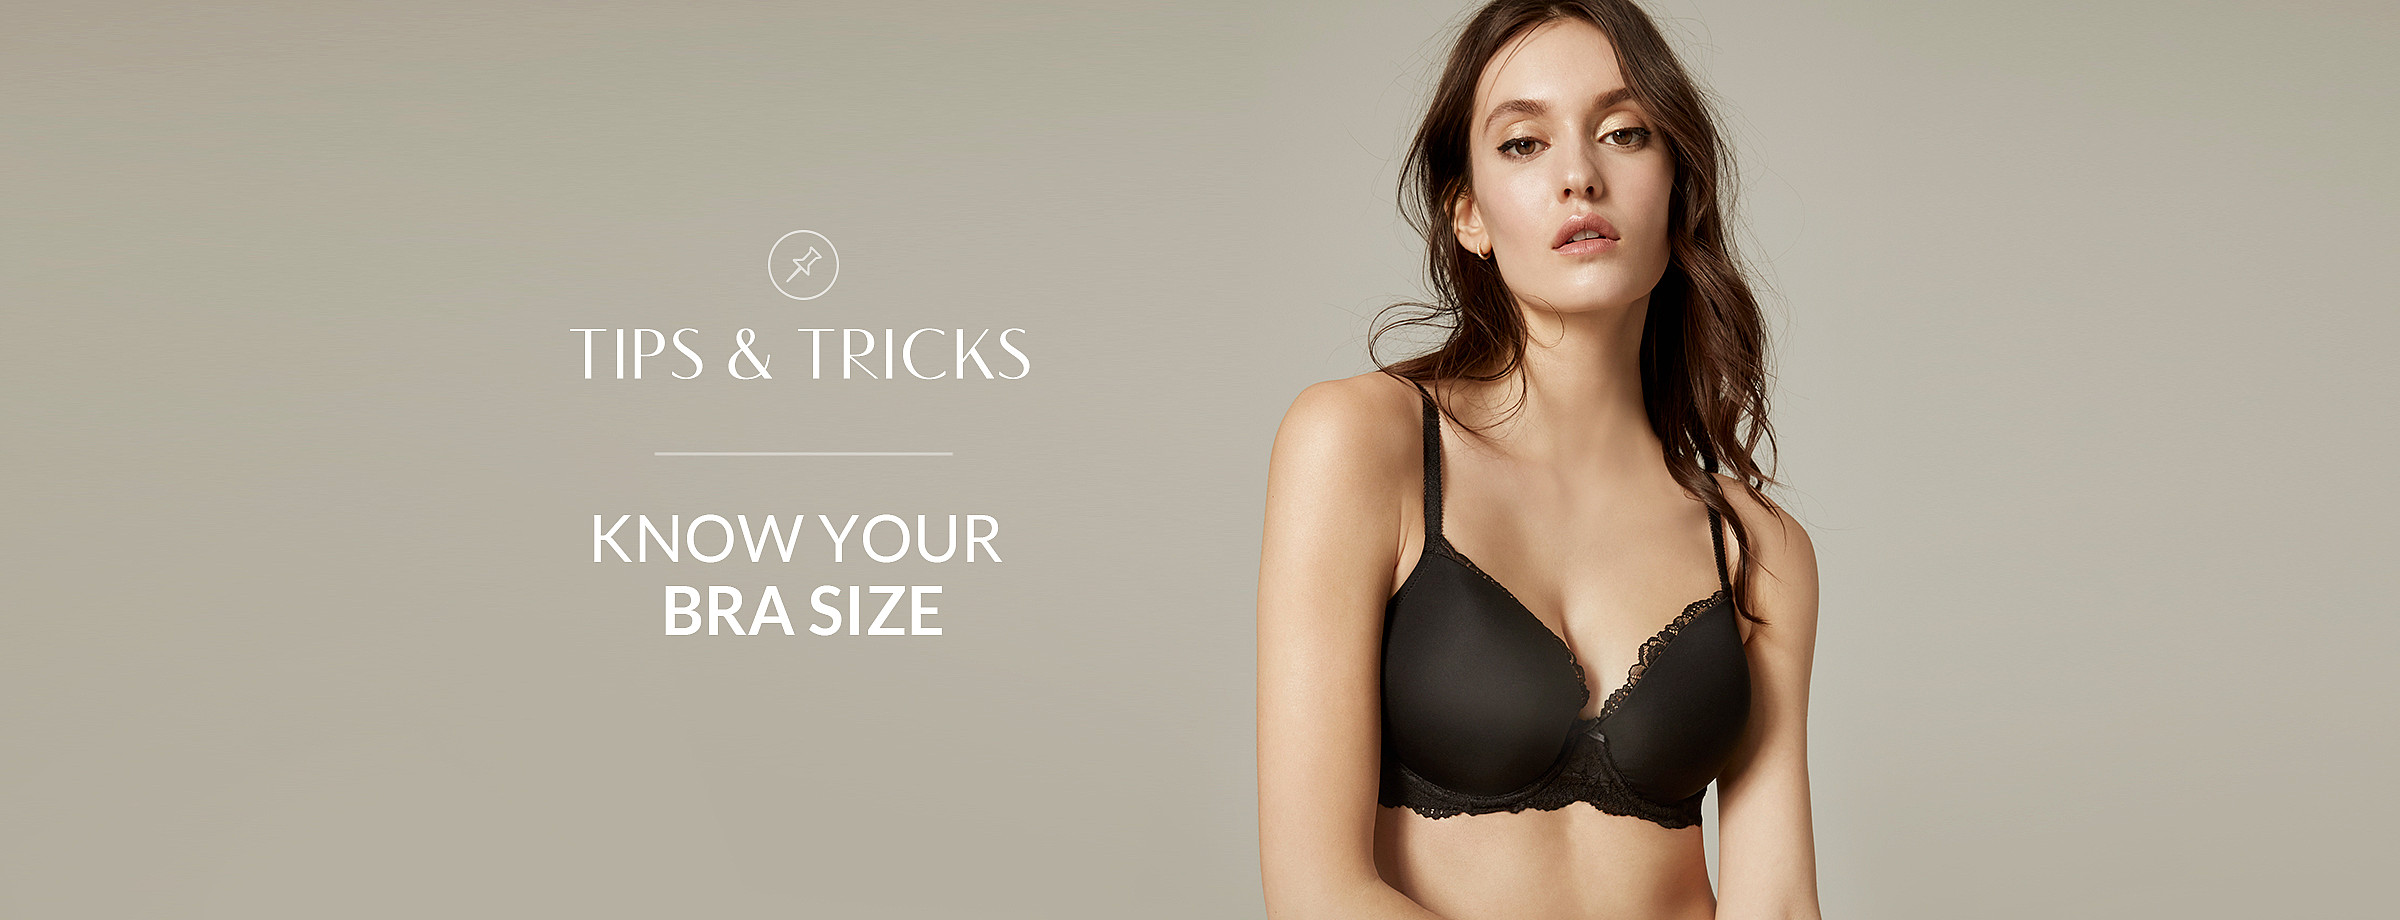 Know your bra size